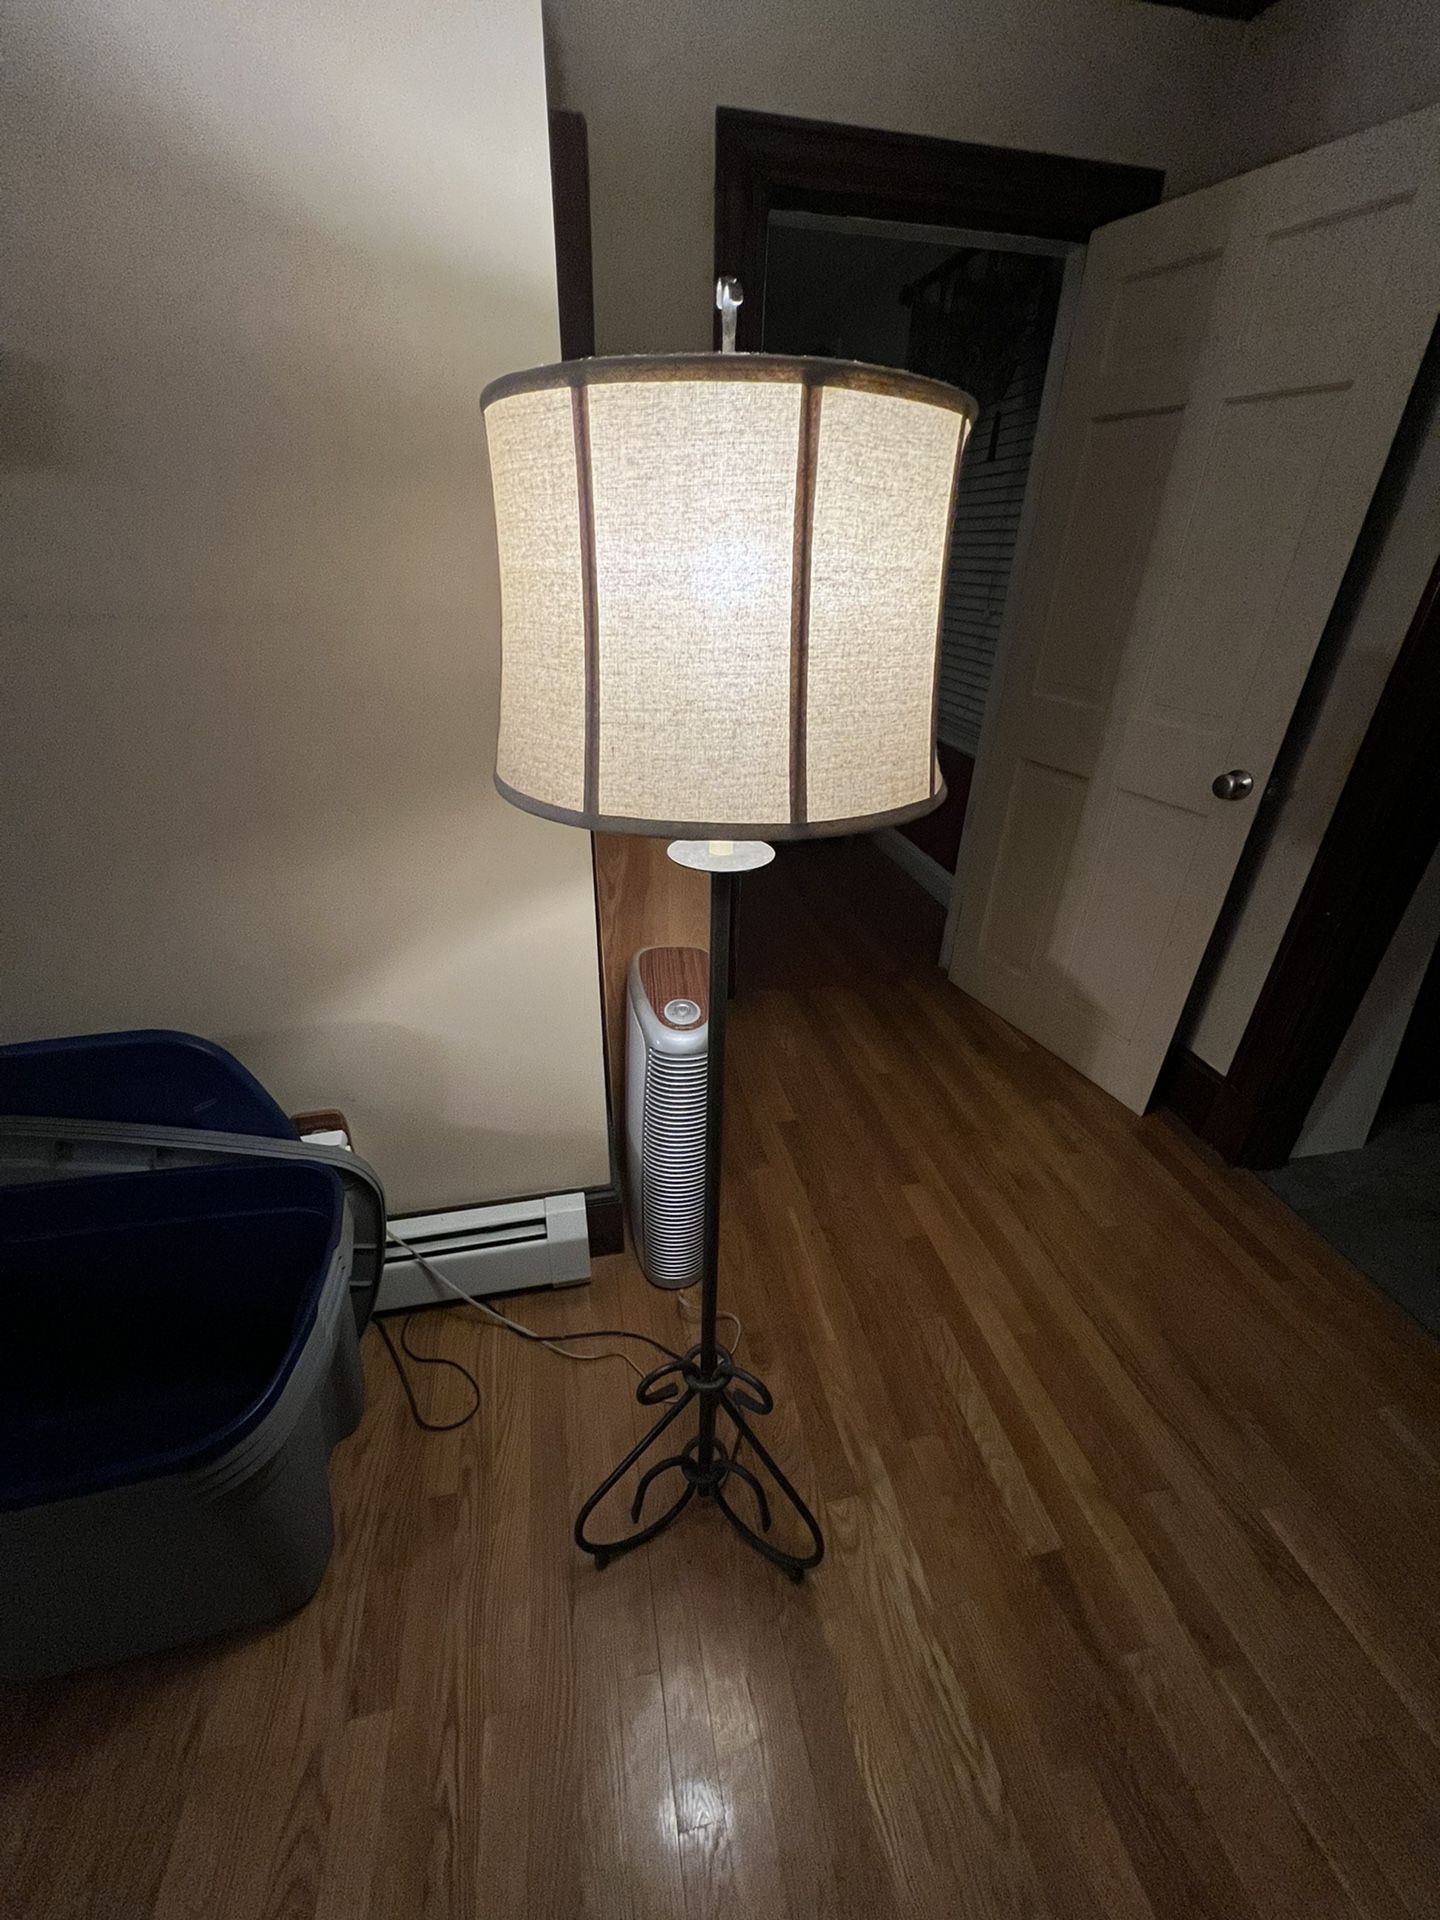 Vintage Standing Lamp